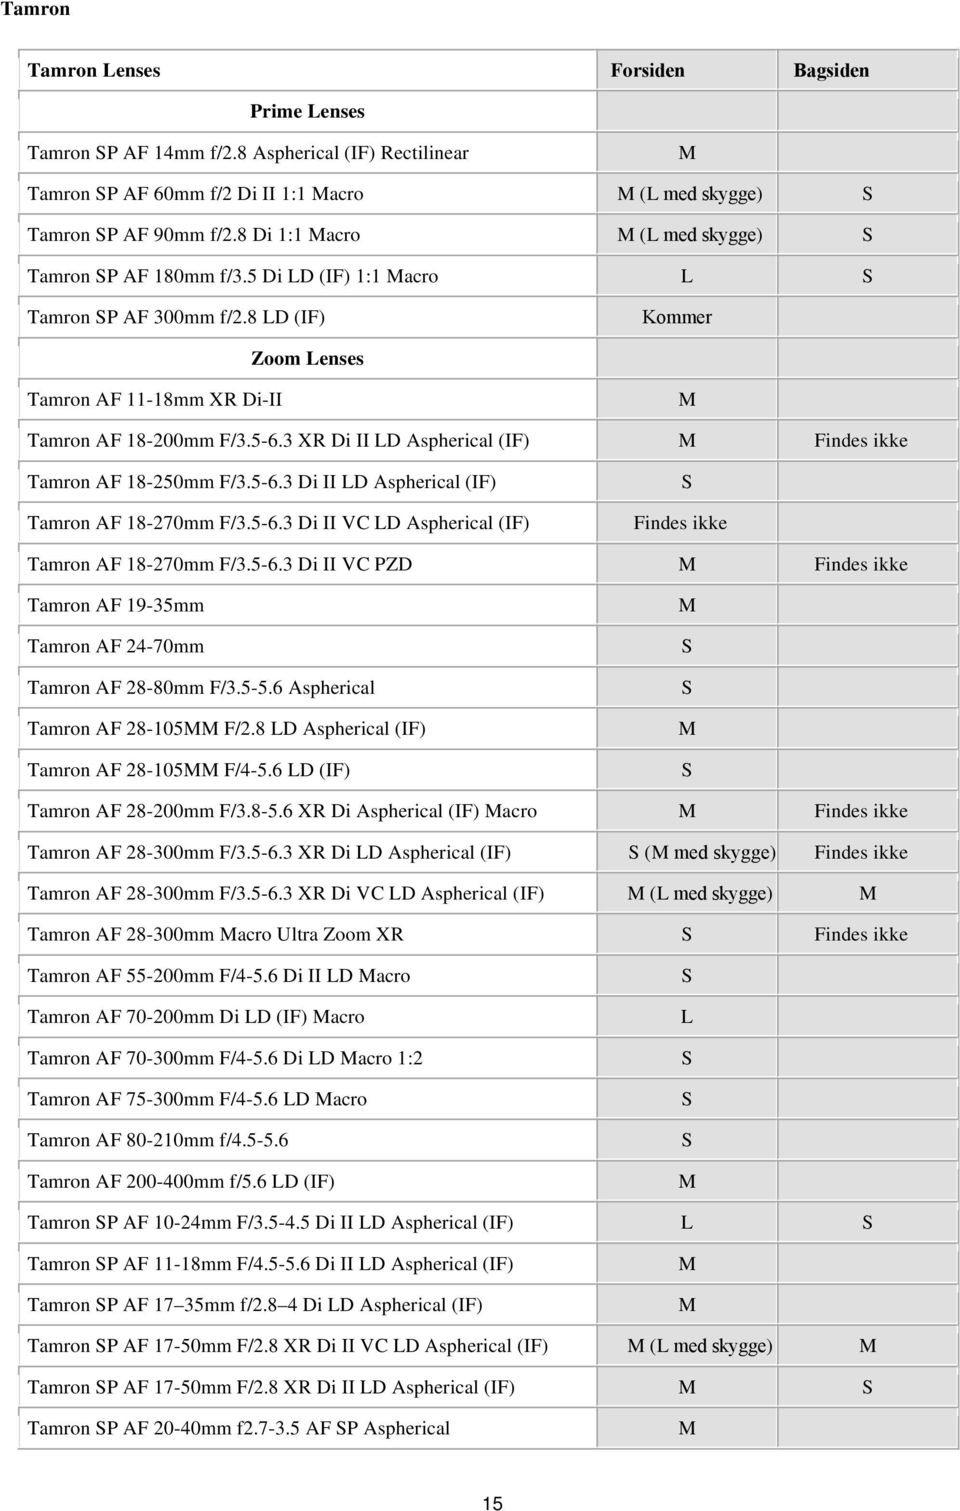 3 XR Di II D Aspherical (IF) Findes ikke Tamron AF 18-250mm F/3.5-6.3 Di II D Aspherical (IF) Tamron AF 18-270mm F/3.5-6.3 Di II VC D Aspherical (IF) Findes ikke Tamron AF 18-270mm F/3.5-6.3 Di II VC PZD Findes ikke Tamron AF 19-35mm Tamron AF 24-70mm Tamron AF 28-80mm F/3.